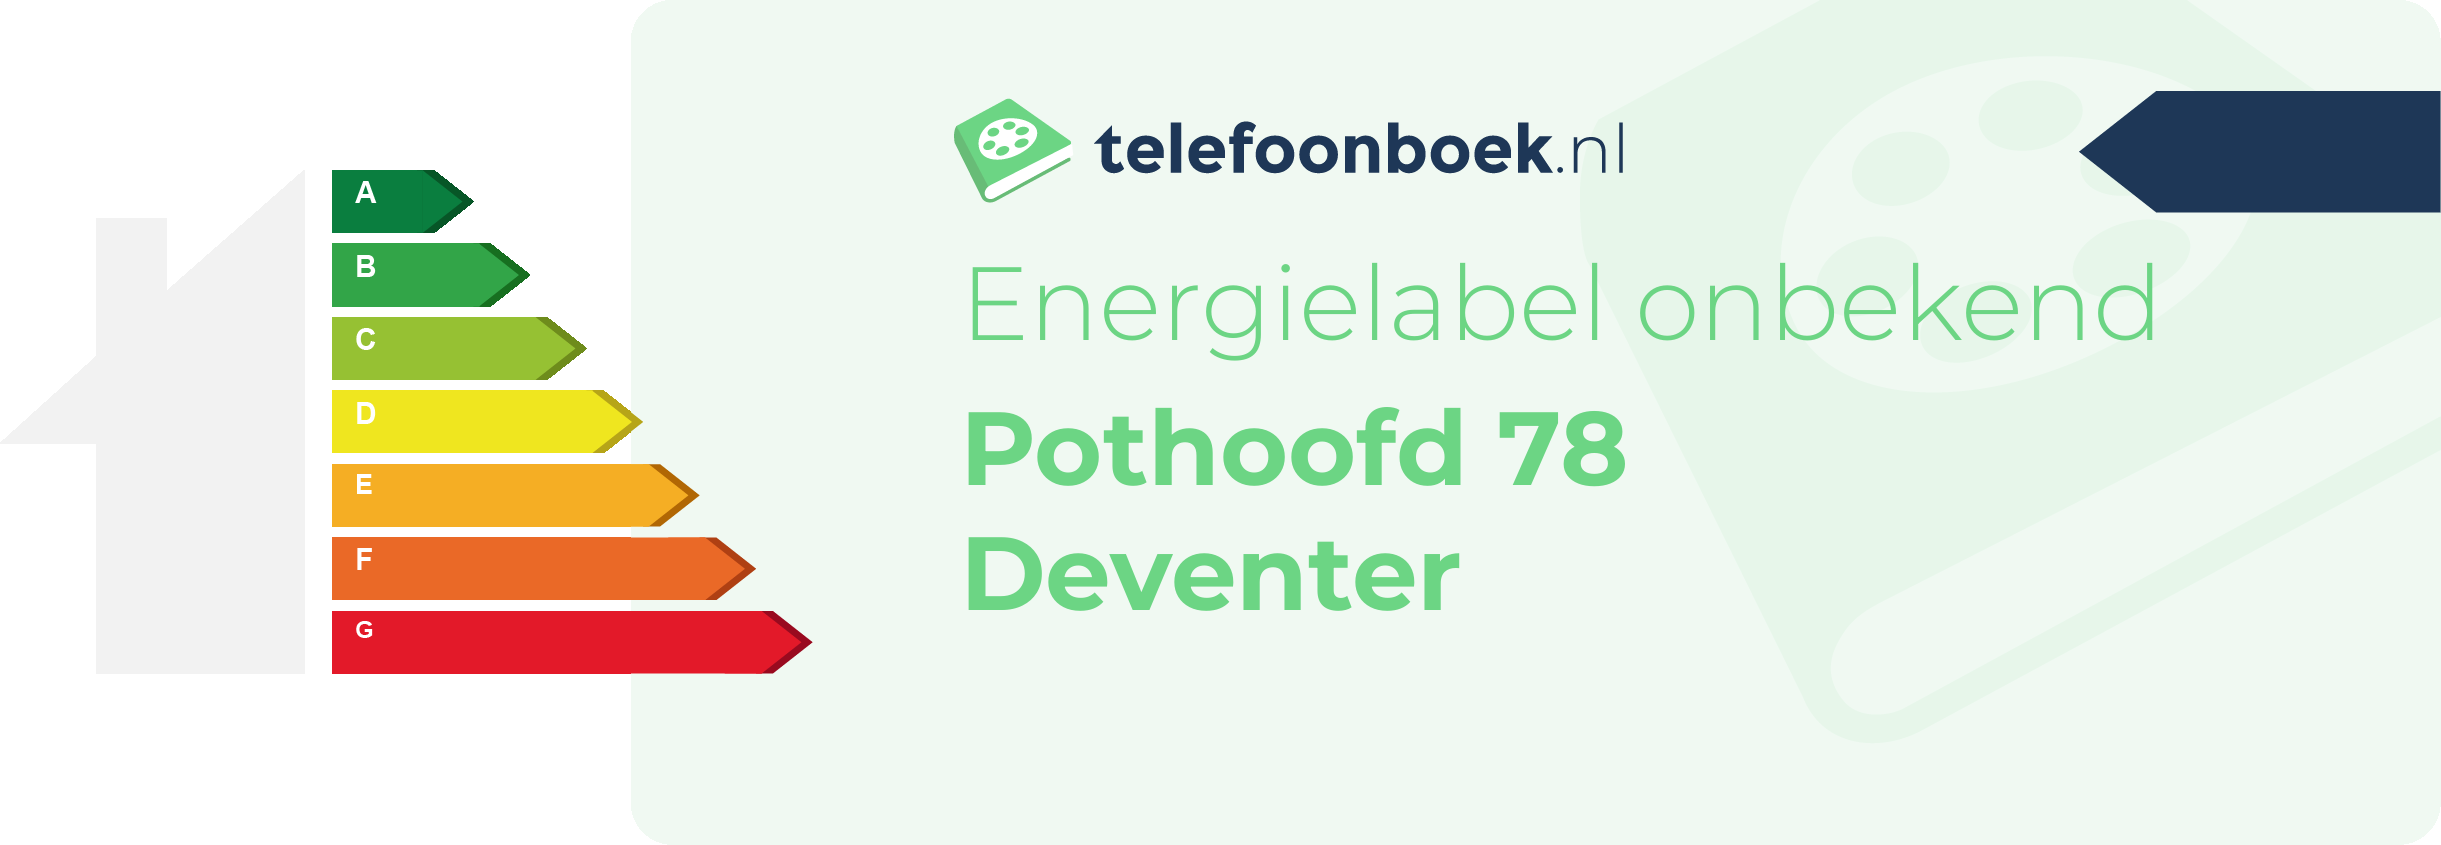 Energielabel Pothoofd 78 Deventer